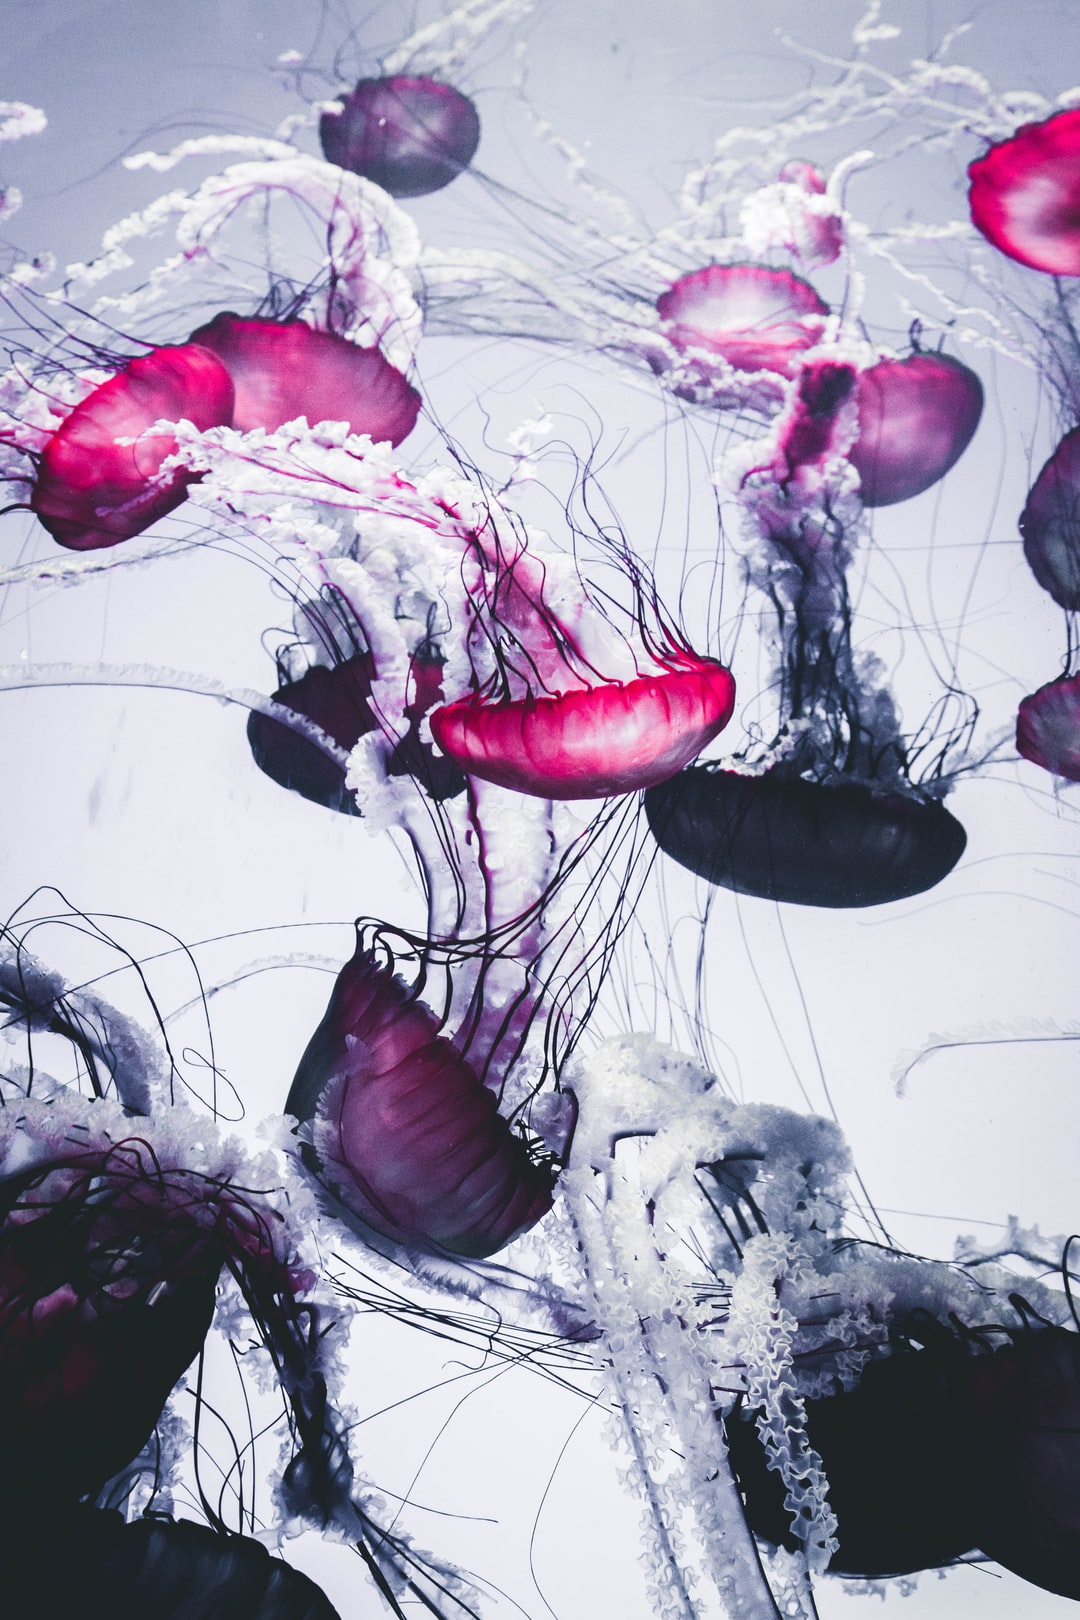 19 wichtige Fragen zu Können Artemia Im Aquarium Überleben?